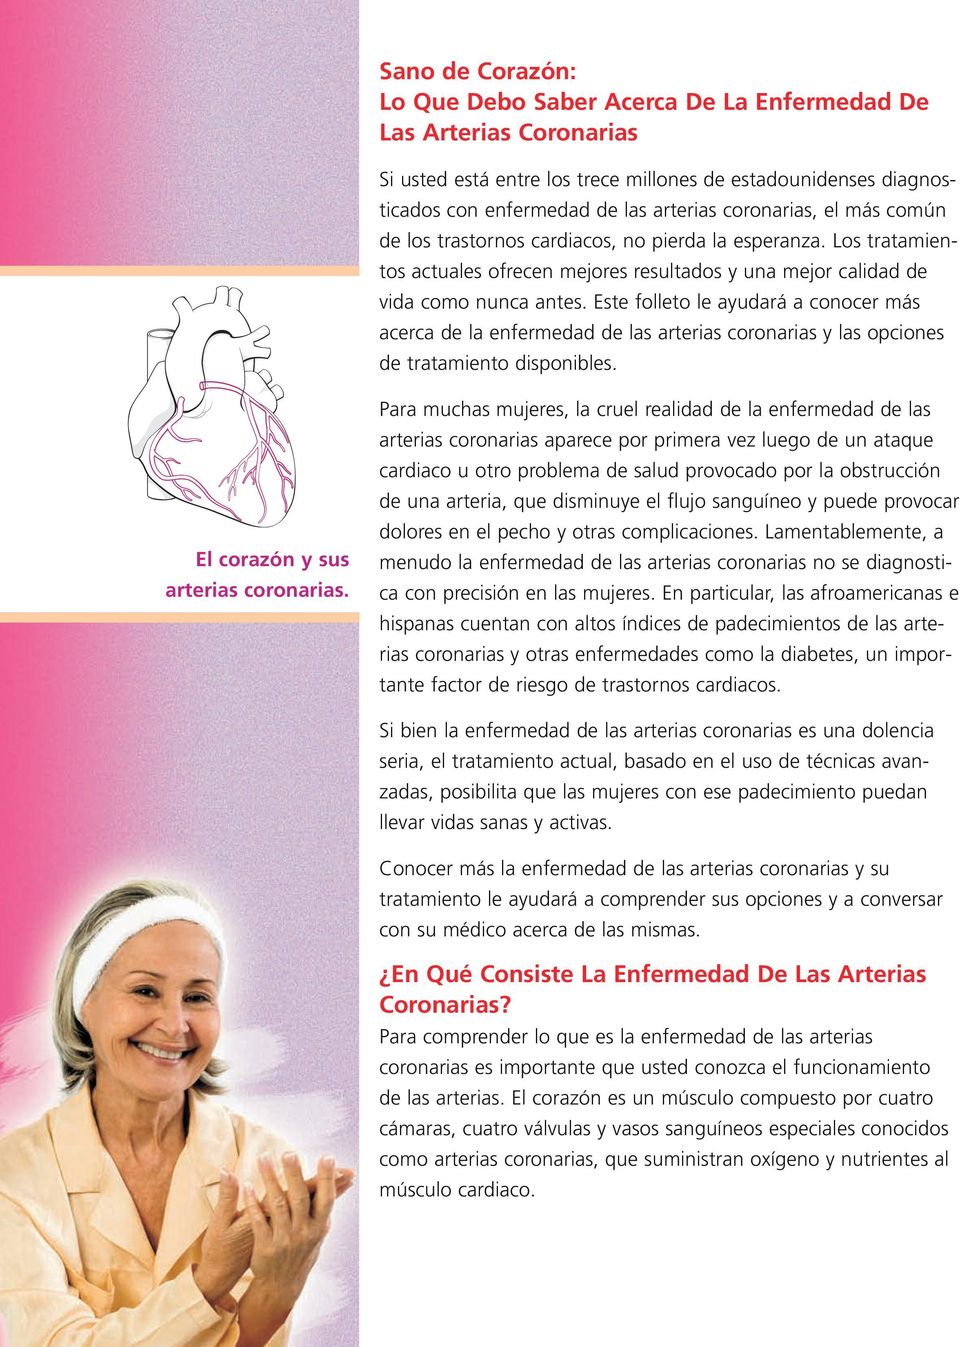 Este folleto le ayudará a conocer más acerca de la enfermedad de las arterias coronarias y las opciones de tratamiento disponibles. El corazón y sus arterias coronarias.